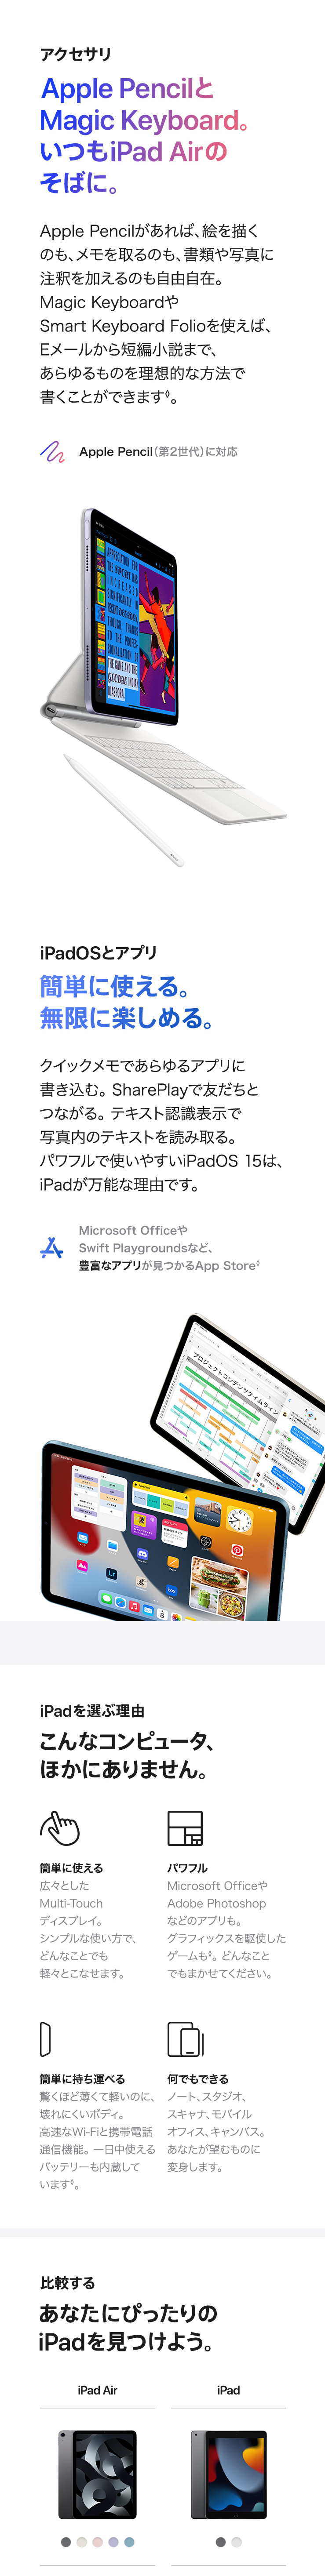 iPad Air 製品情報